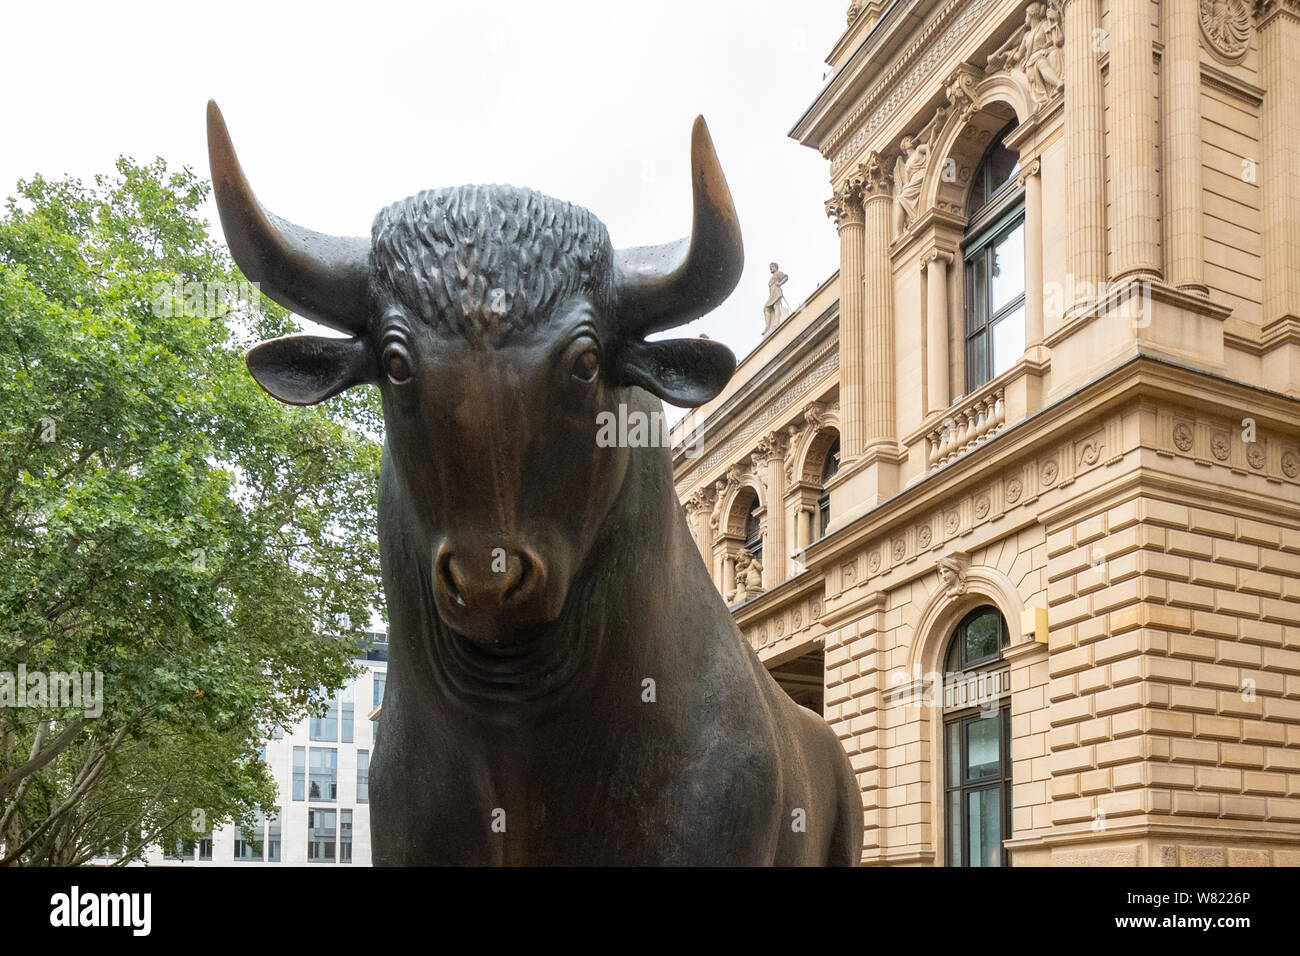 Stier Börse Konzept - Statue von Bull außerhalb der Börse Frankfurt, Frankfurt am Main, Deutschland, Europa Stockfoto